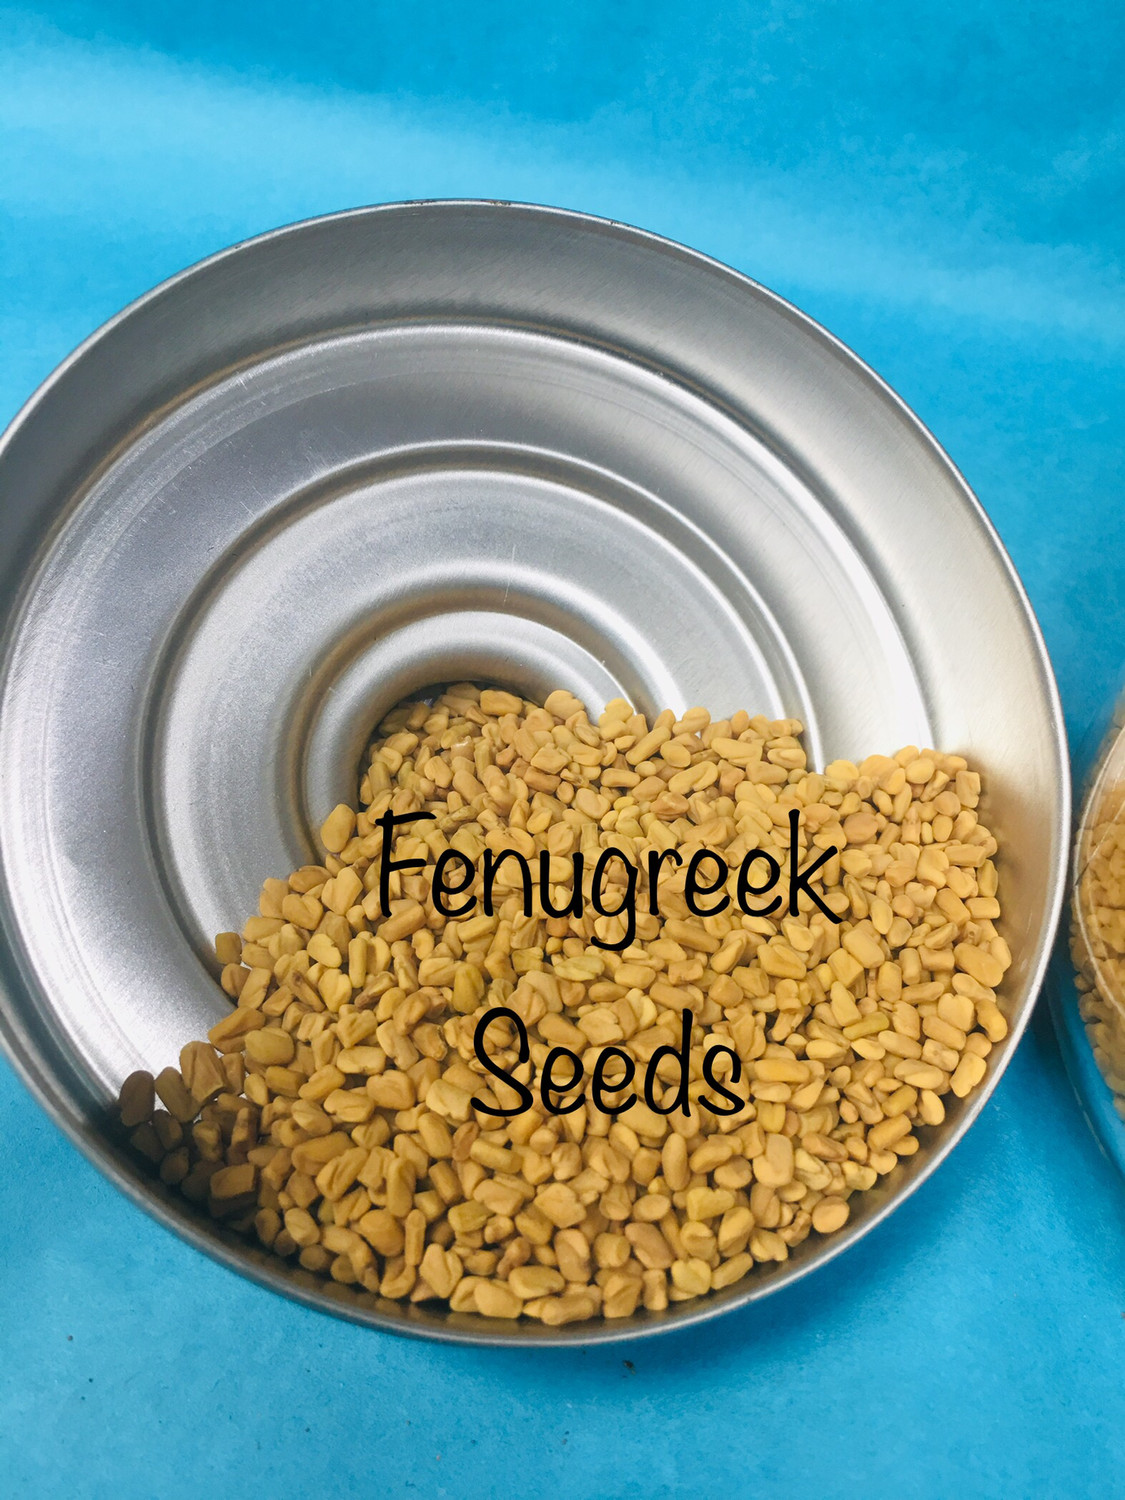 Fenugreek (Methi) seeds